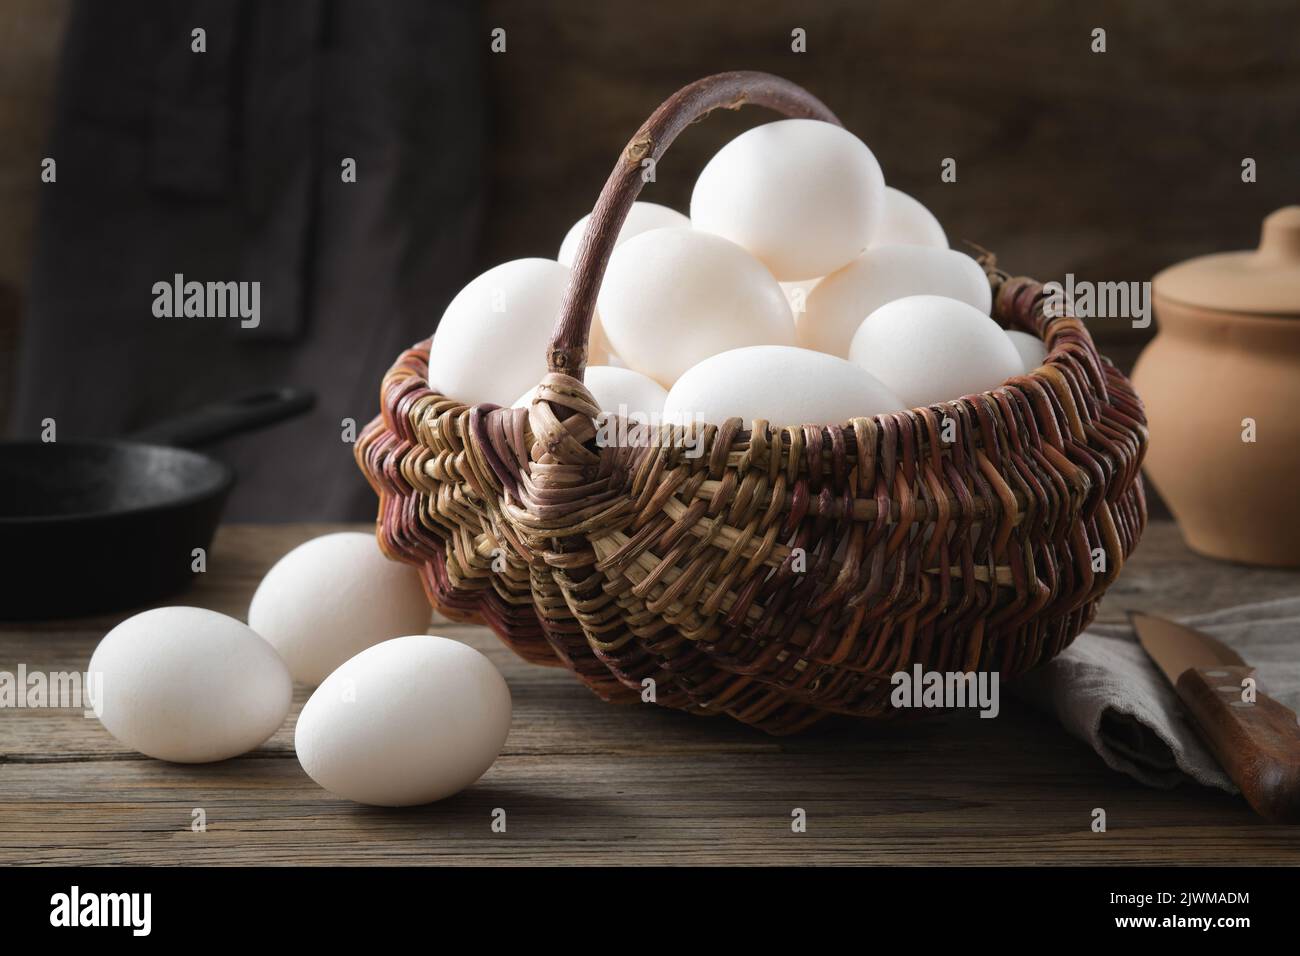 Cesta de mimbre llena de huevos de pollo blancos sobre una mesa de madera. Sartén y olla de arcilla en el fondo. Foto de stock